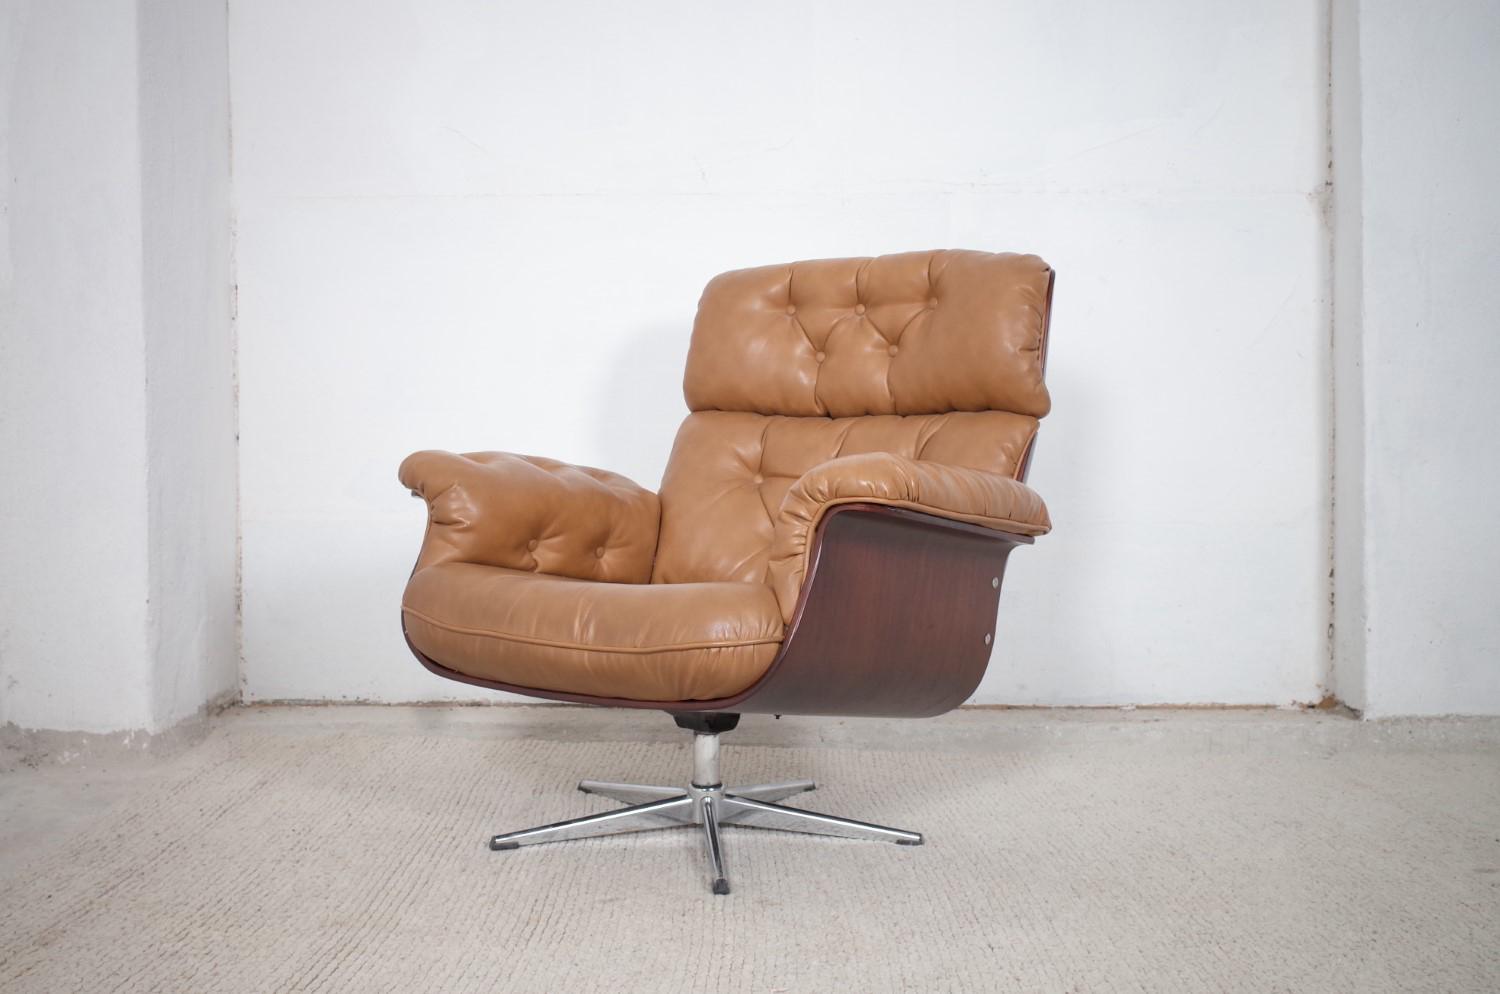 Dieser bequeme Sessel wurde von Martin Stoll entworfen und von Stoll Giroflex in der Schweiz hergestellt. Der Sessel ist drehbar und befindet sich in einem sehr guten Zustand mit altersbedingten Gebrauchsspuren. Das Leder ist in einem guten Zustand.